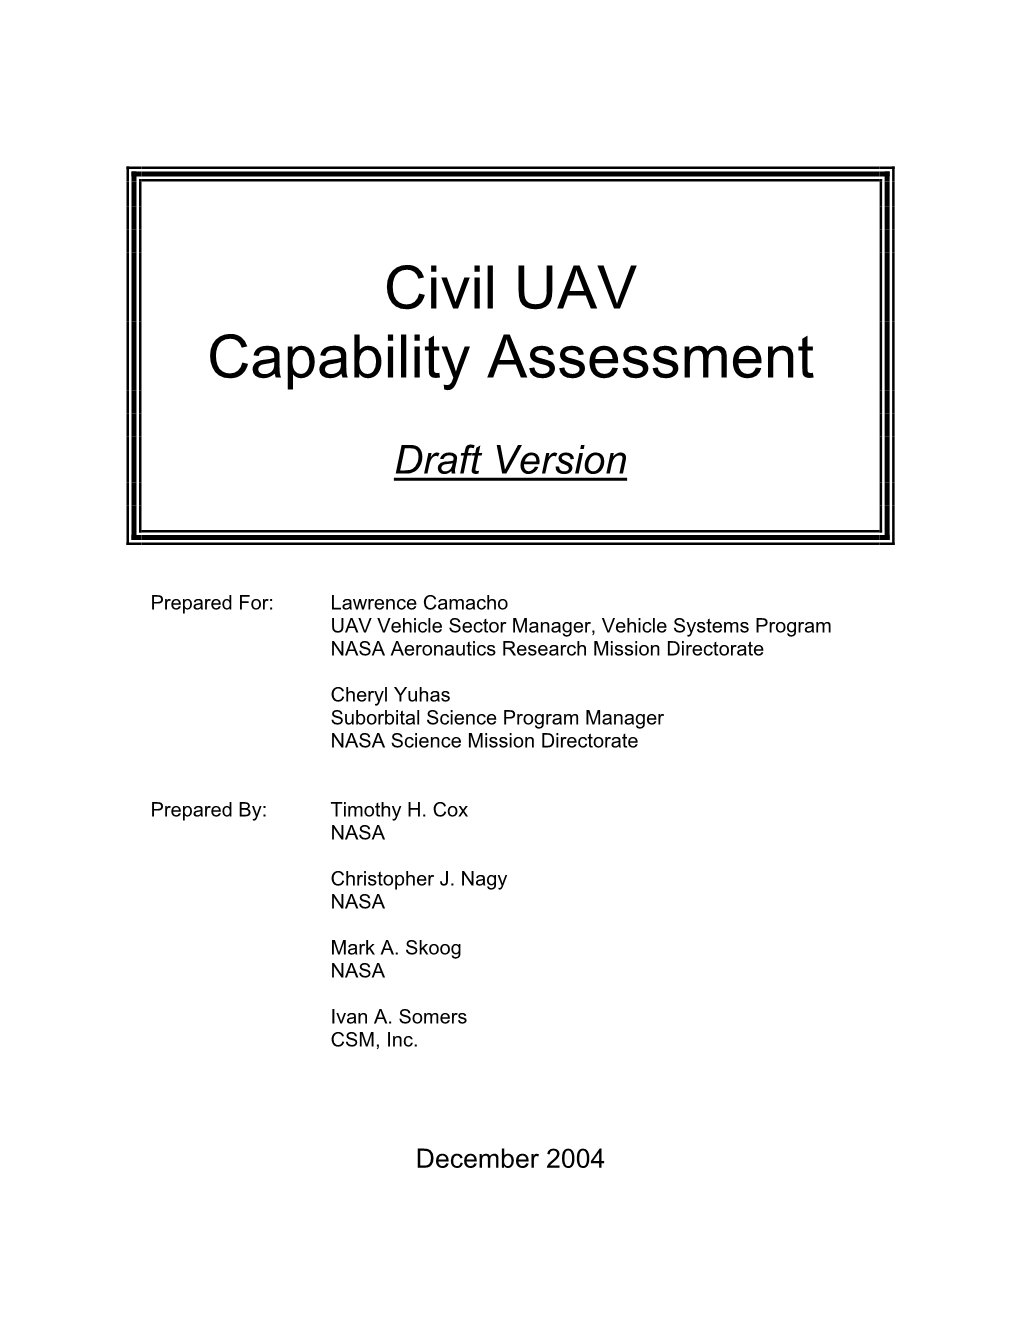 Civil UAV Capability Assessment